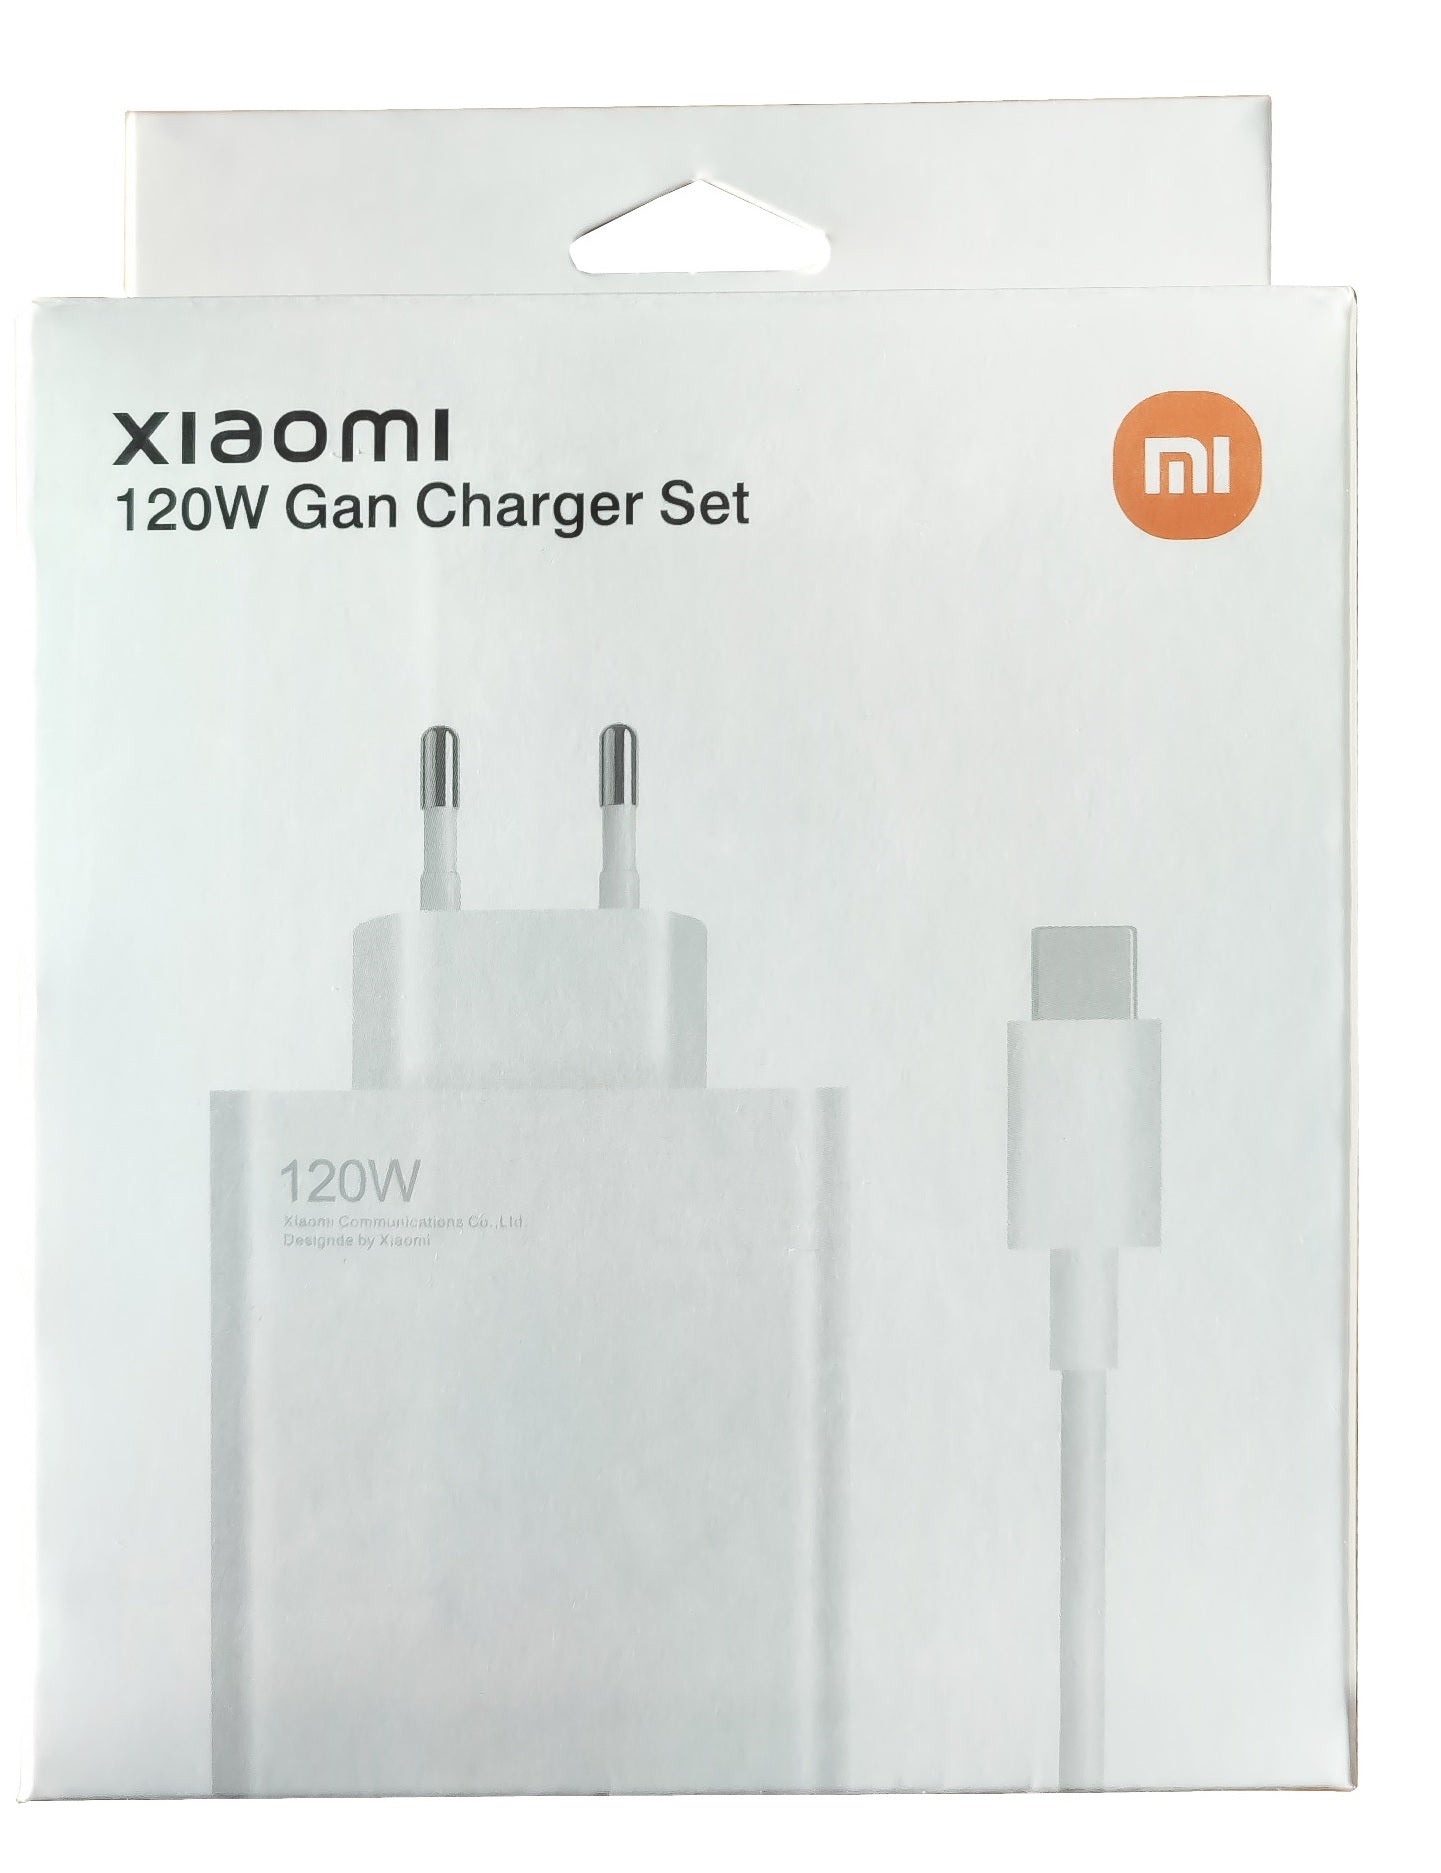 Chargeur Xiaomi Mi Turbo 120W Type-C Adaptateur secteur PD Charge rapide  Compatible avec iPhone iPad Xiaomi Huawei Ordinateur portable Emballé avec  un câble USB vers Type-C Chargeur rapide 